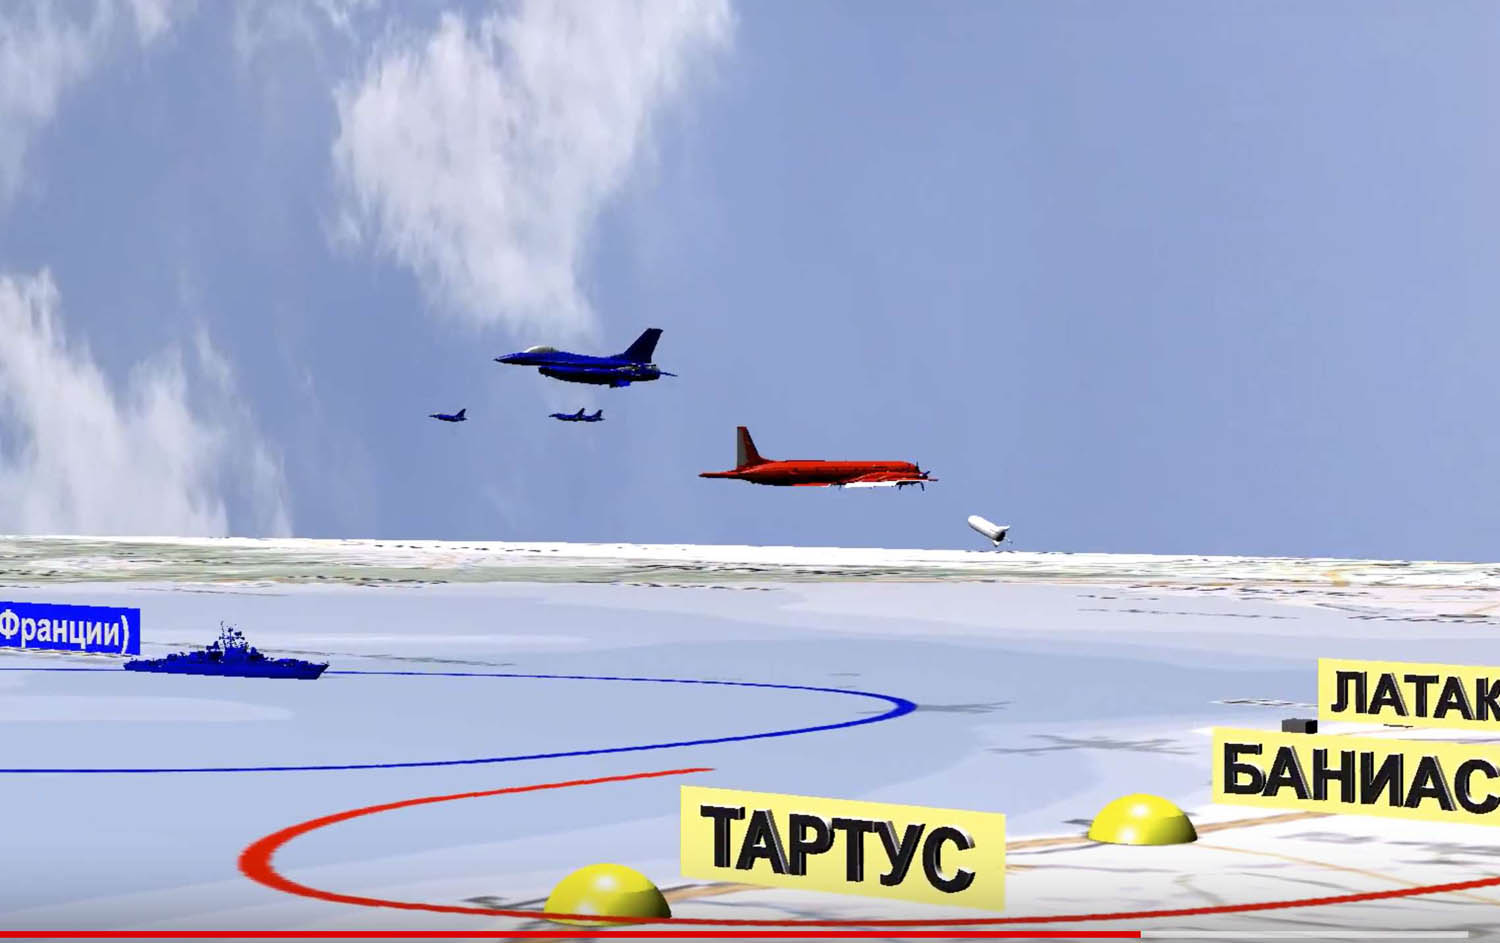 محاكاة من وجهة نظر روسية لحادثة اسقاط الطائرة